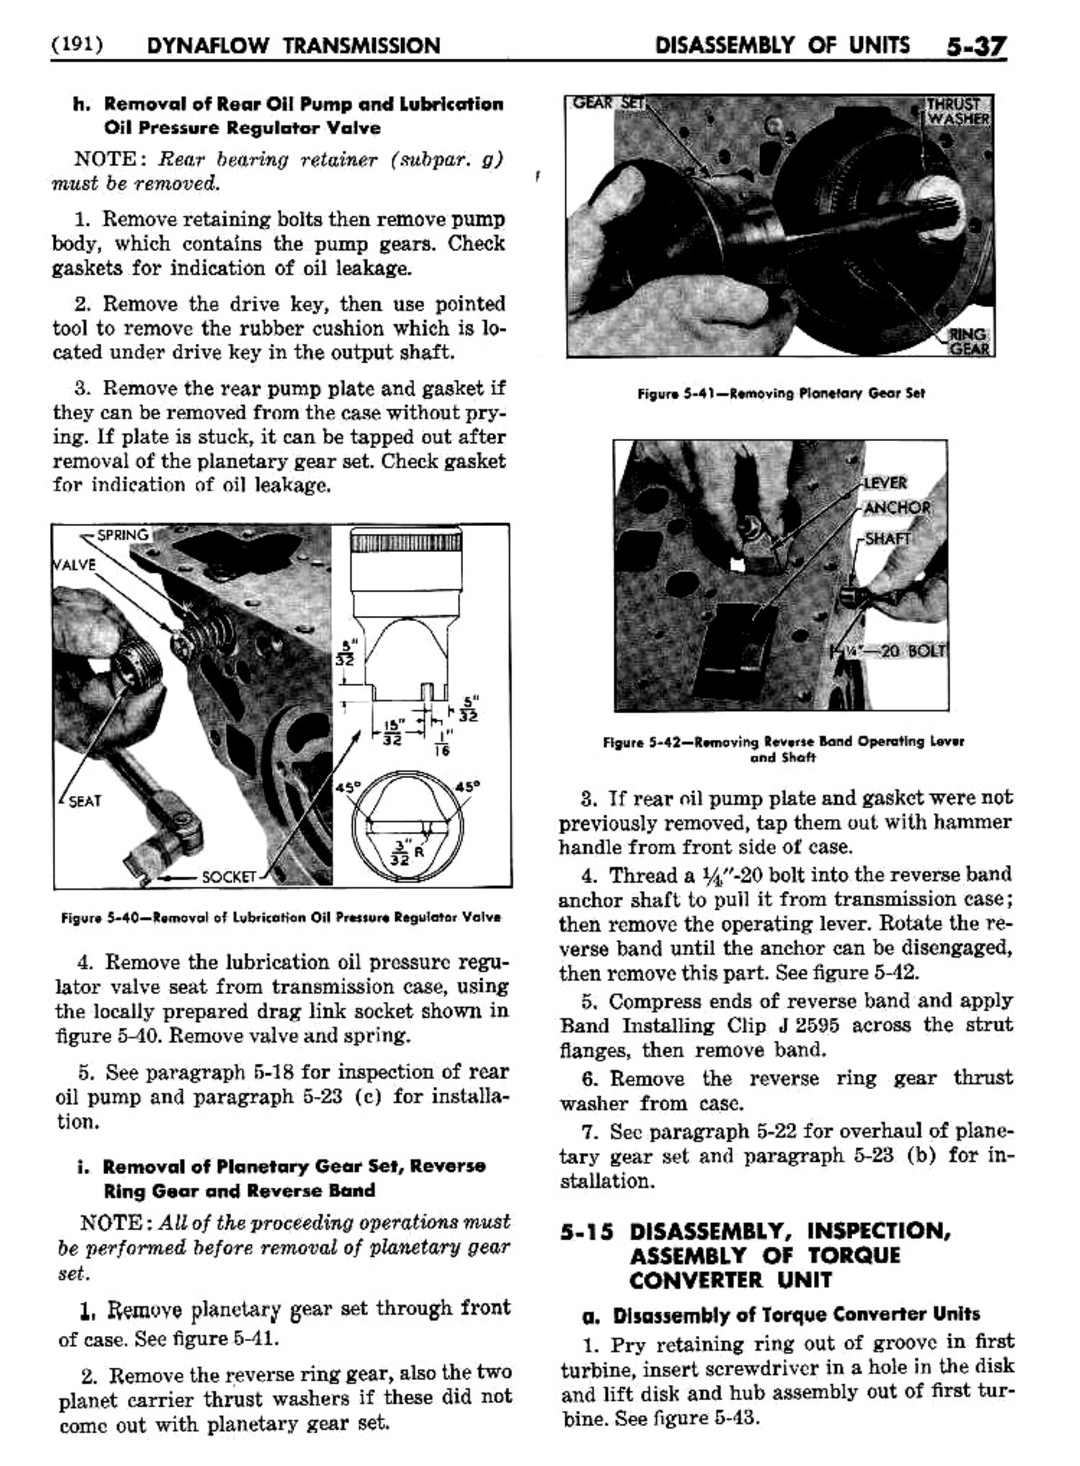 n_06 1954 Buick Shop Manual - Dynaflow-037-037.jpg